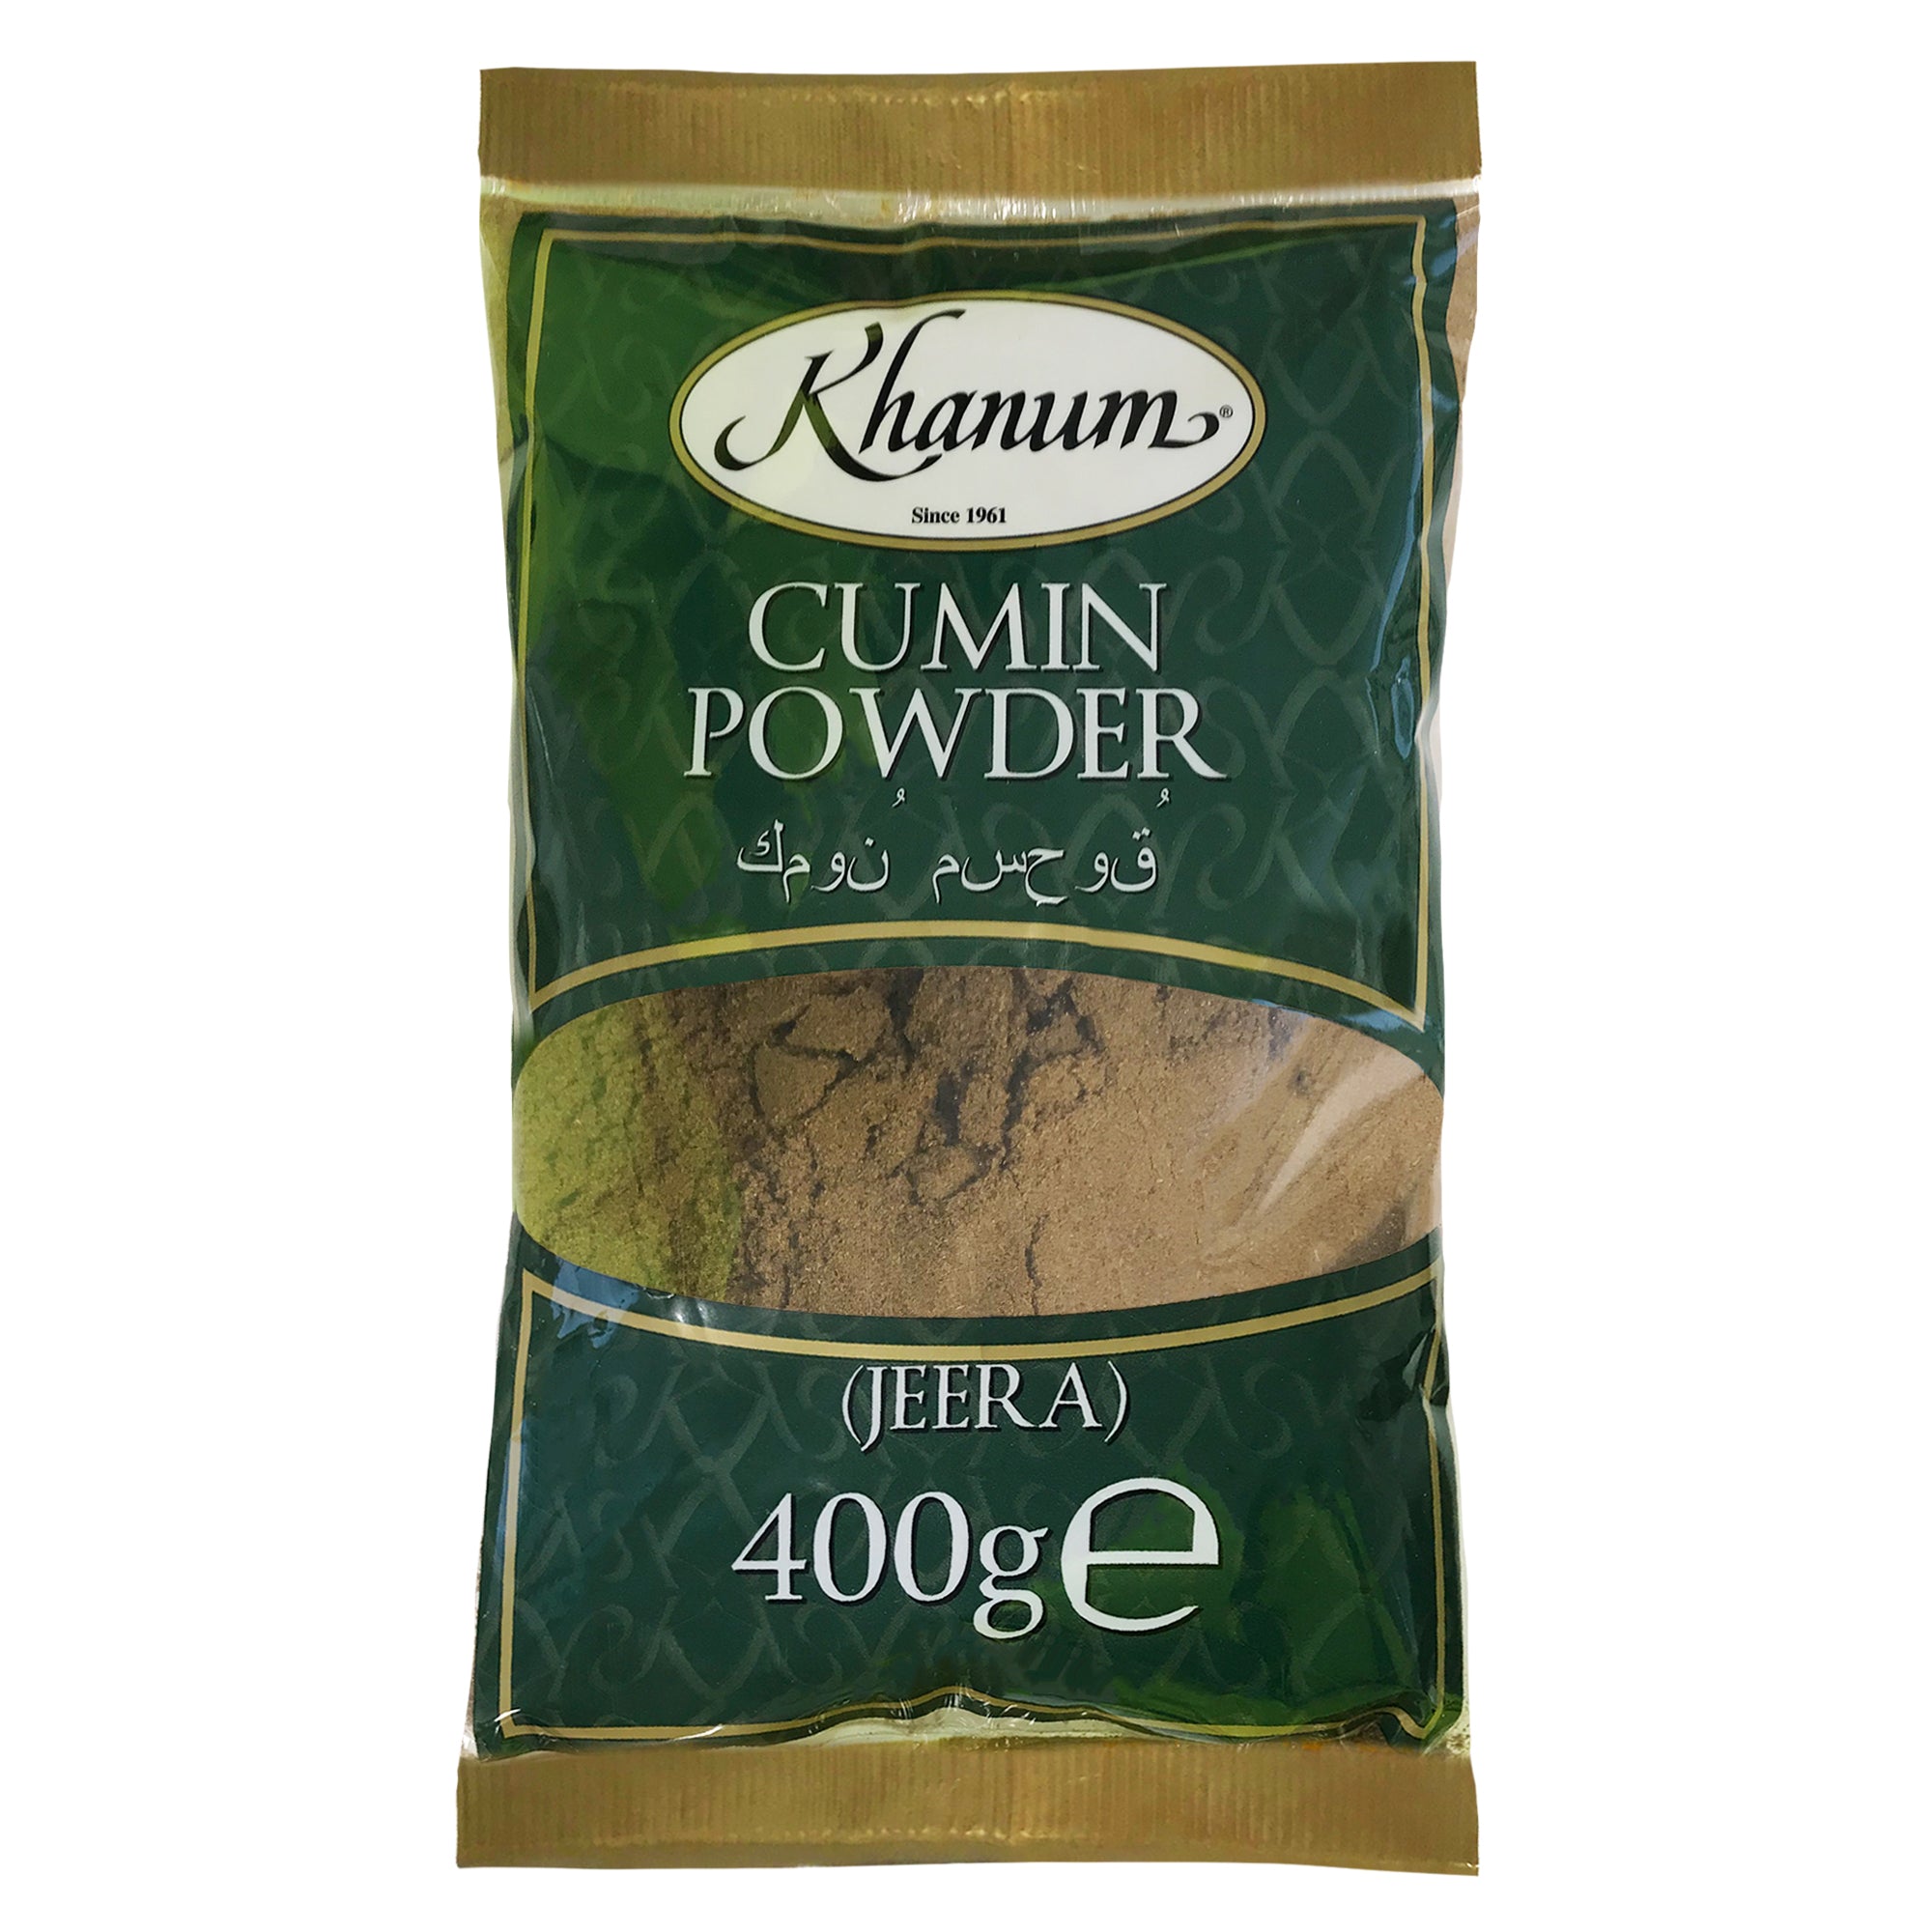 Khanum Cumin Powder (Jeera) 10x400g